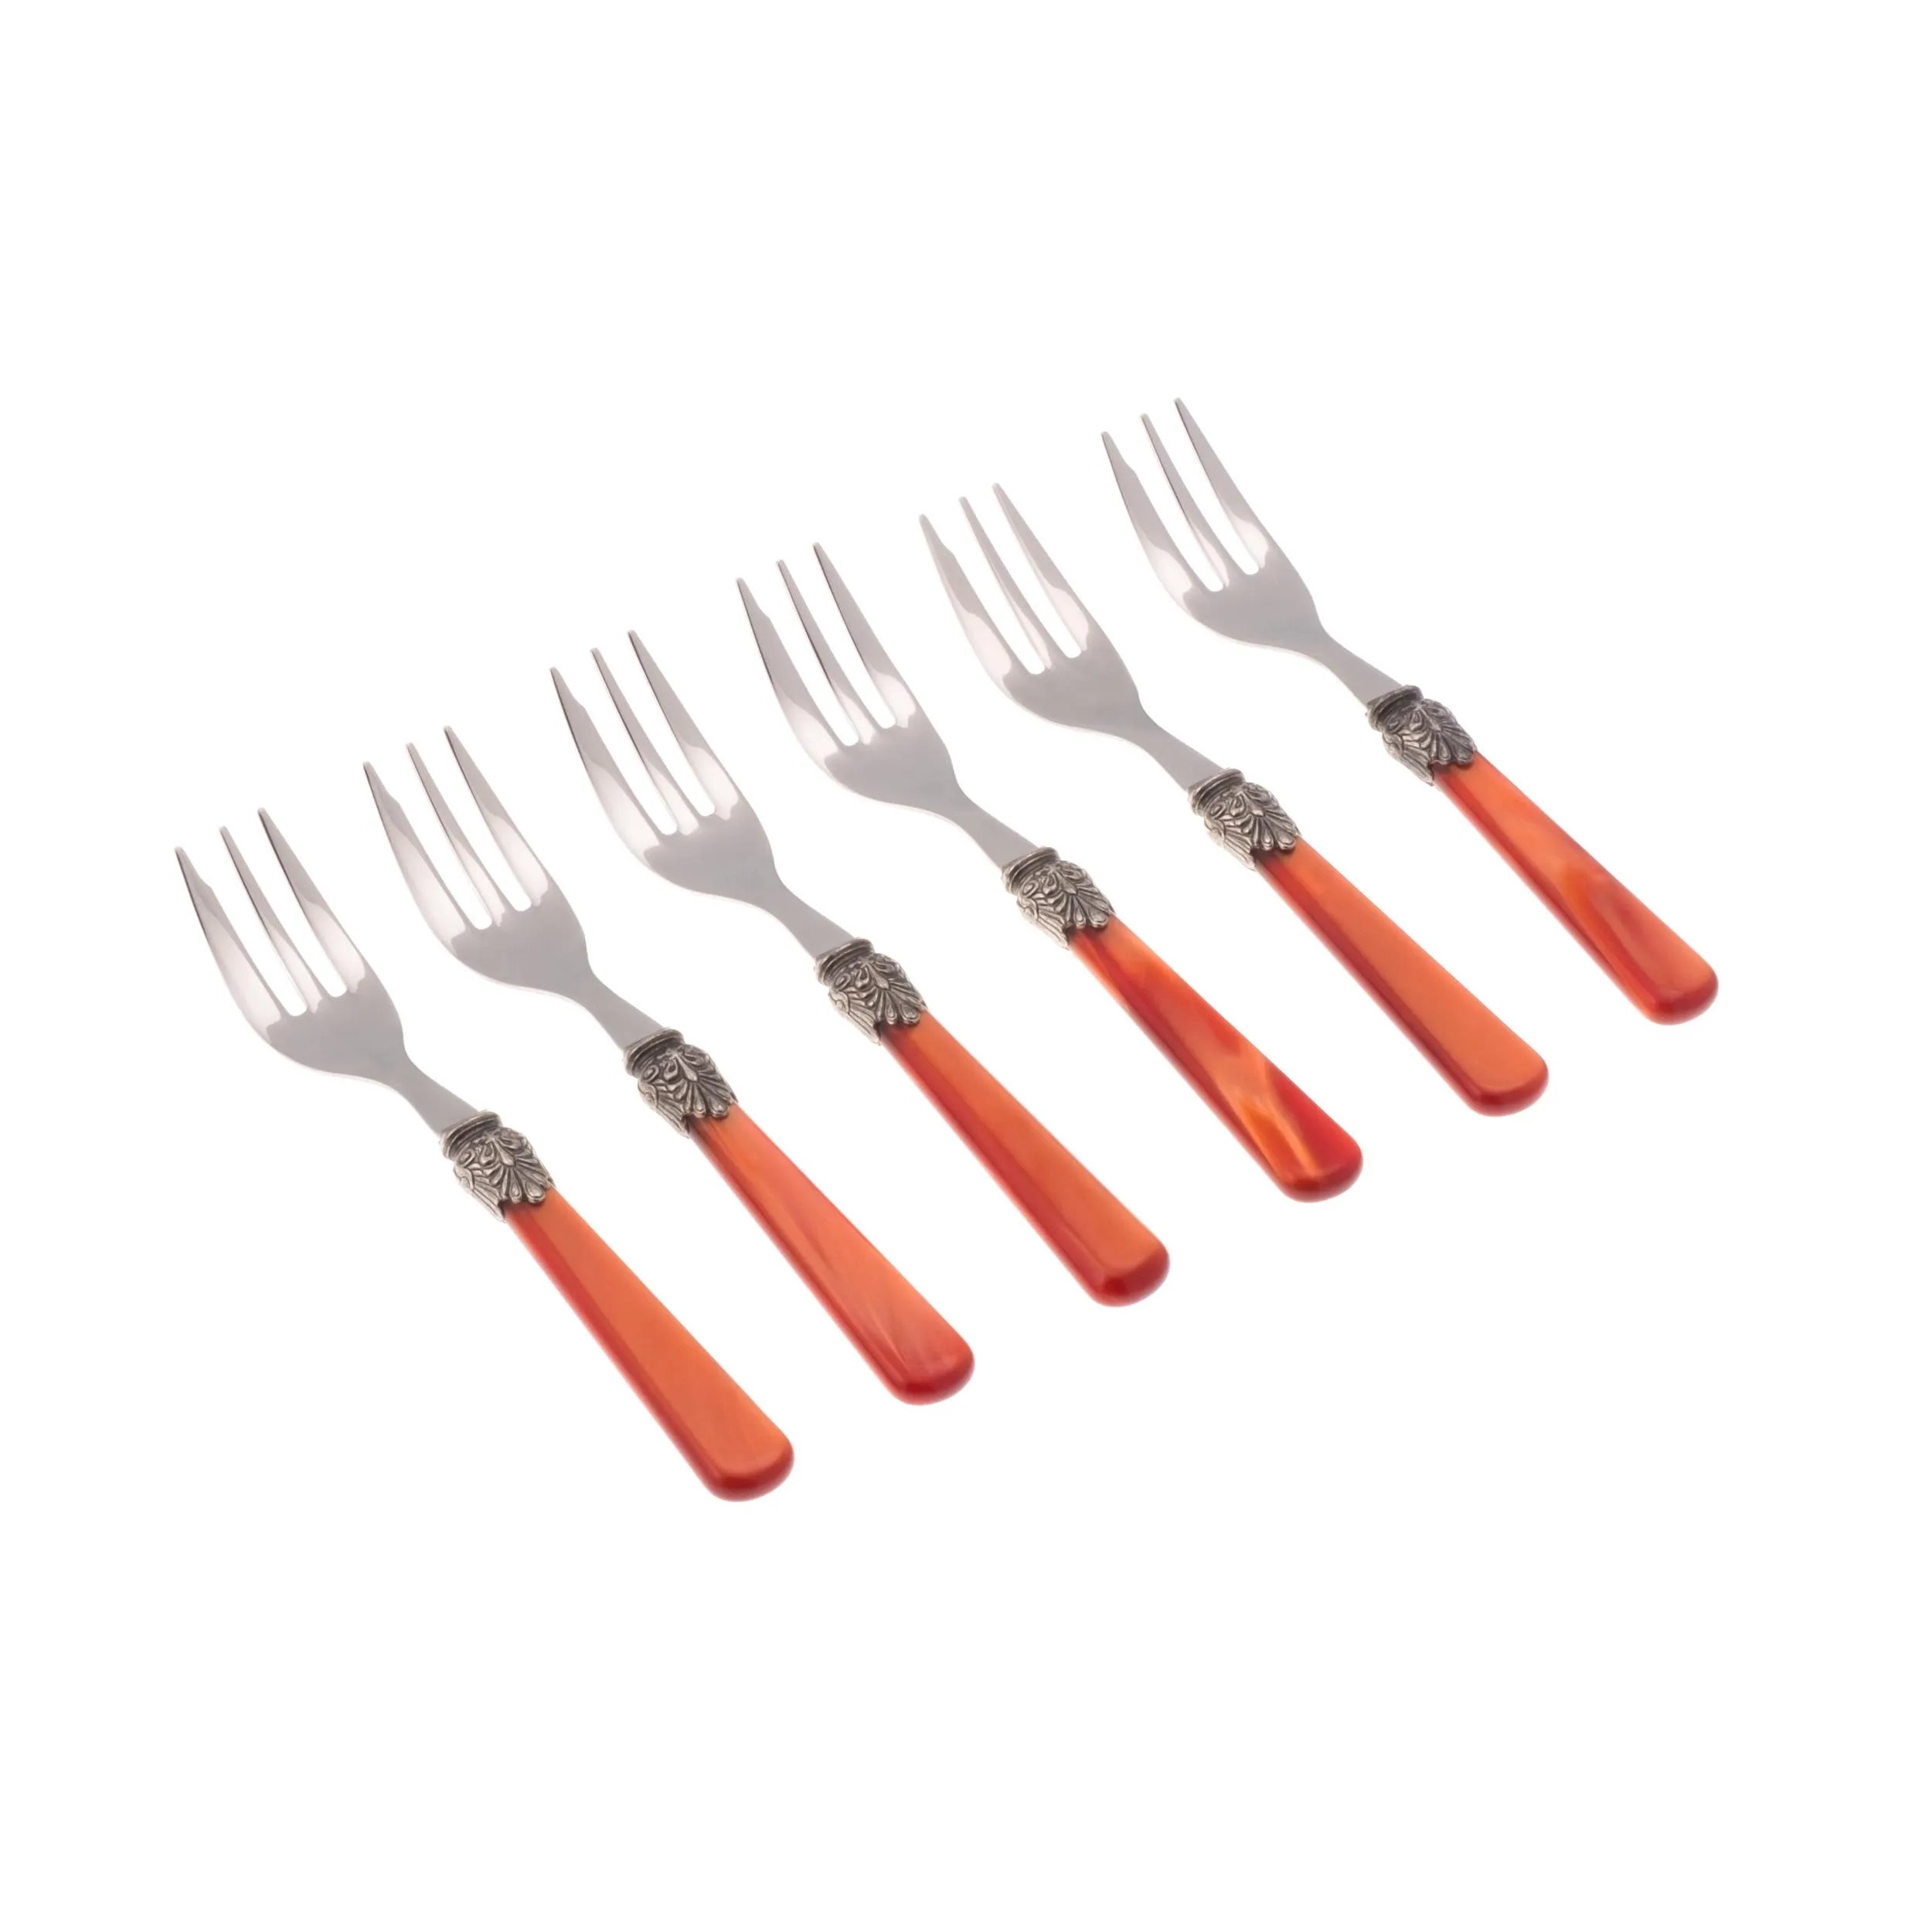 Forchettine da Dolce set da 6 pezzi ELENA in acciaio inox 18/10 manico in metacrilato spessore 1,5 mm colorato arancio